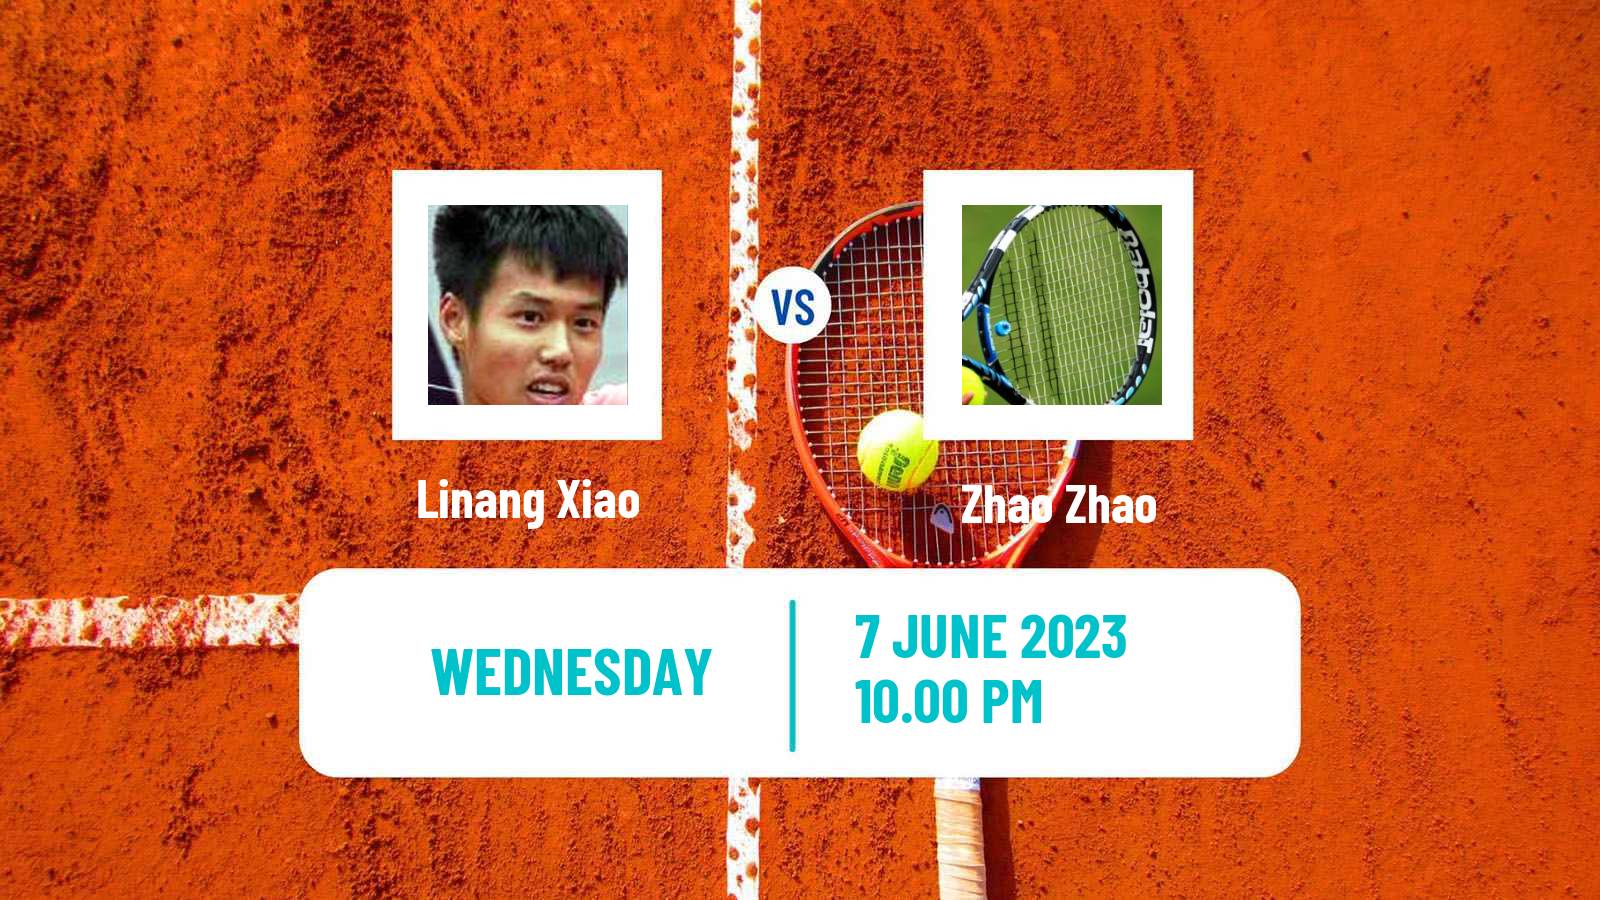 Tennis ITF M25 Luzhou Men Linang Xiao - Zhao Zhao